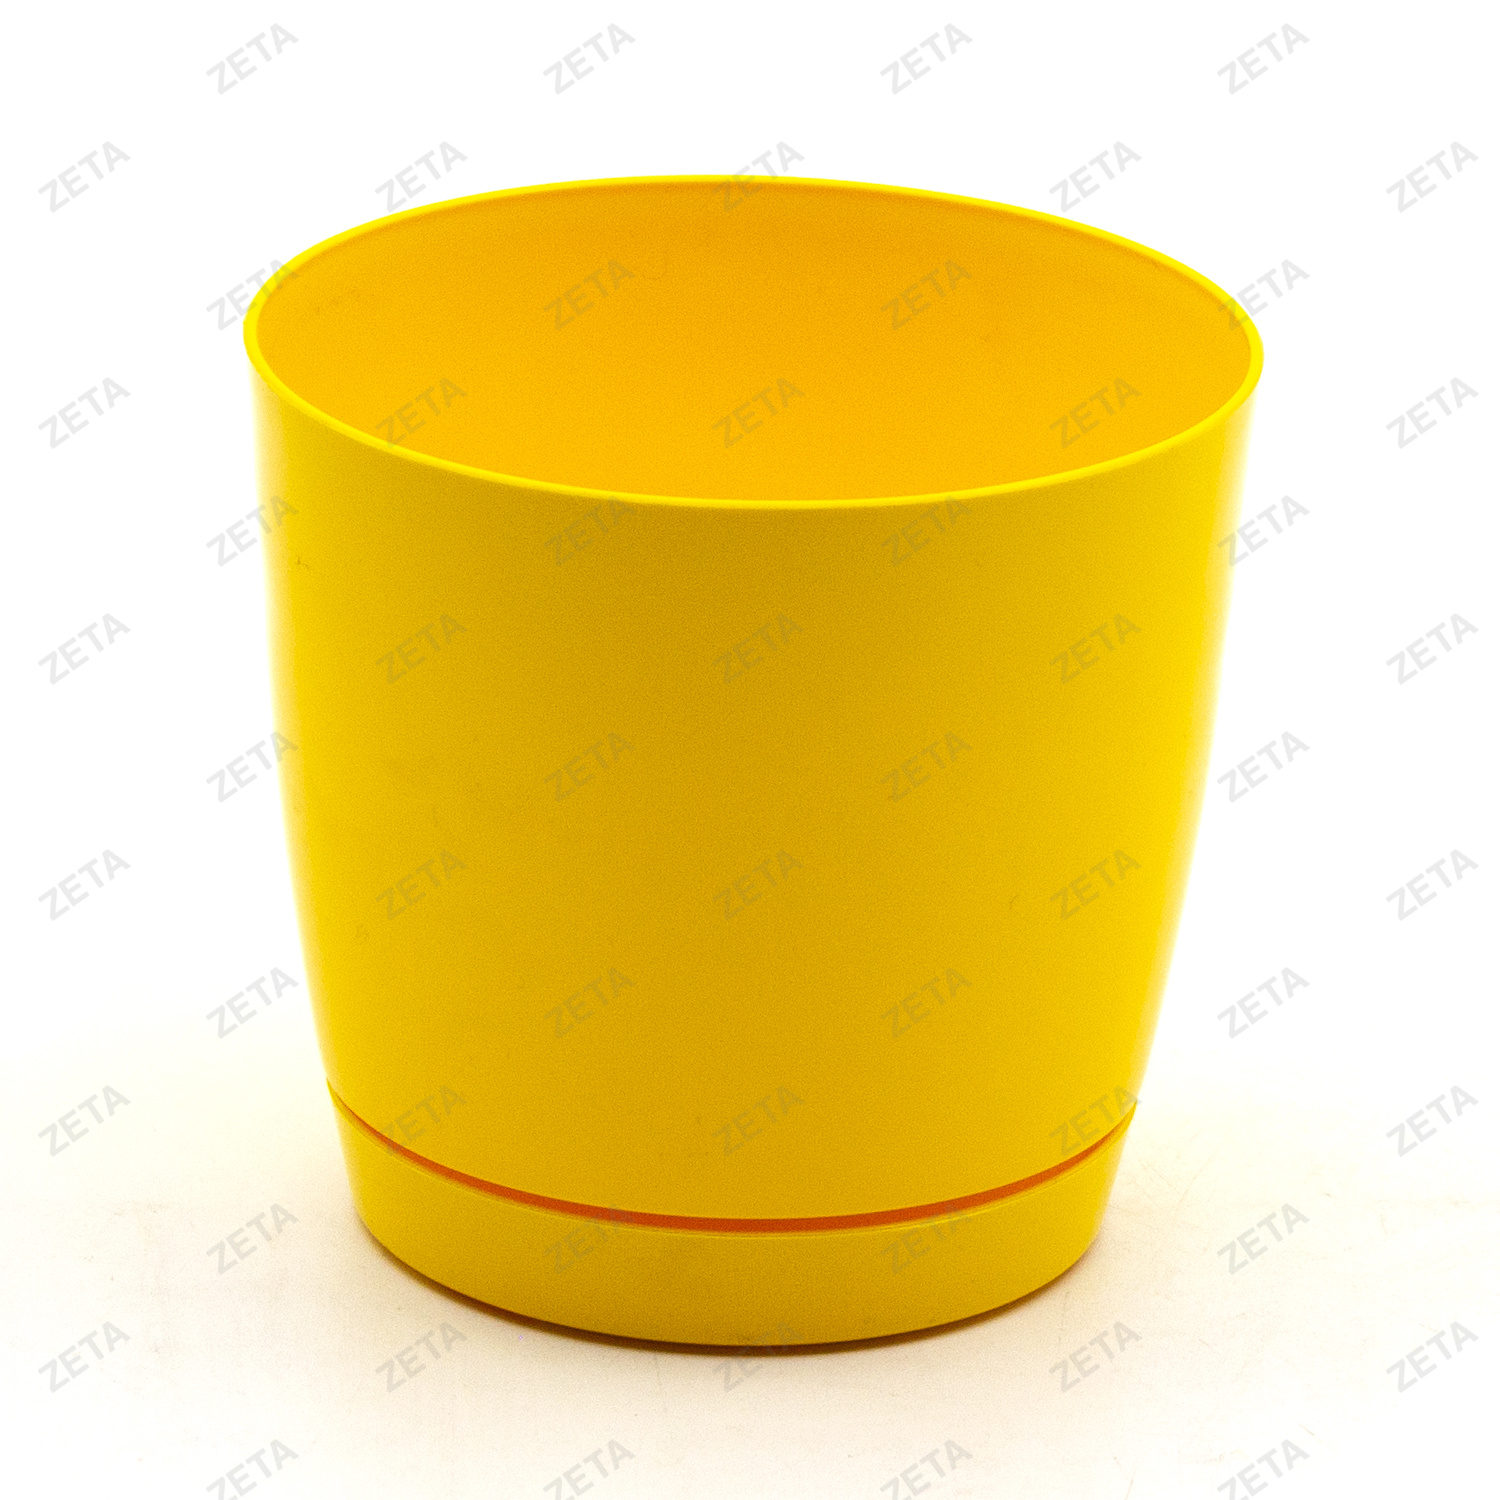 Горшок круглый с поддоном "COUBI 120 DUOP" желтый - изображение 1